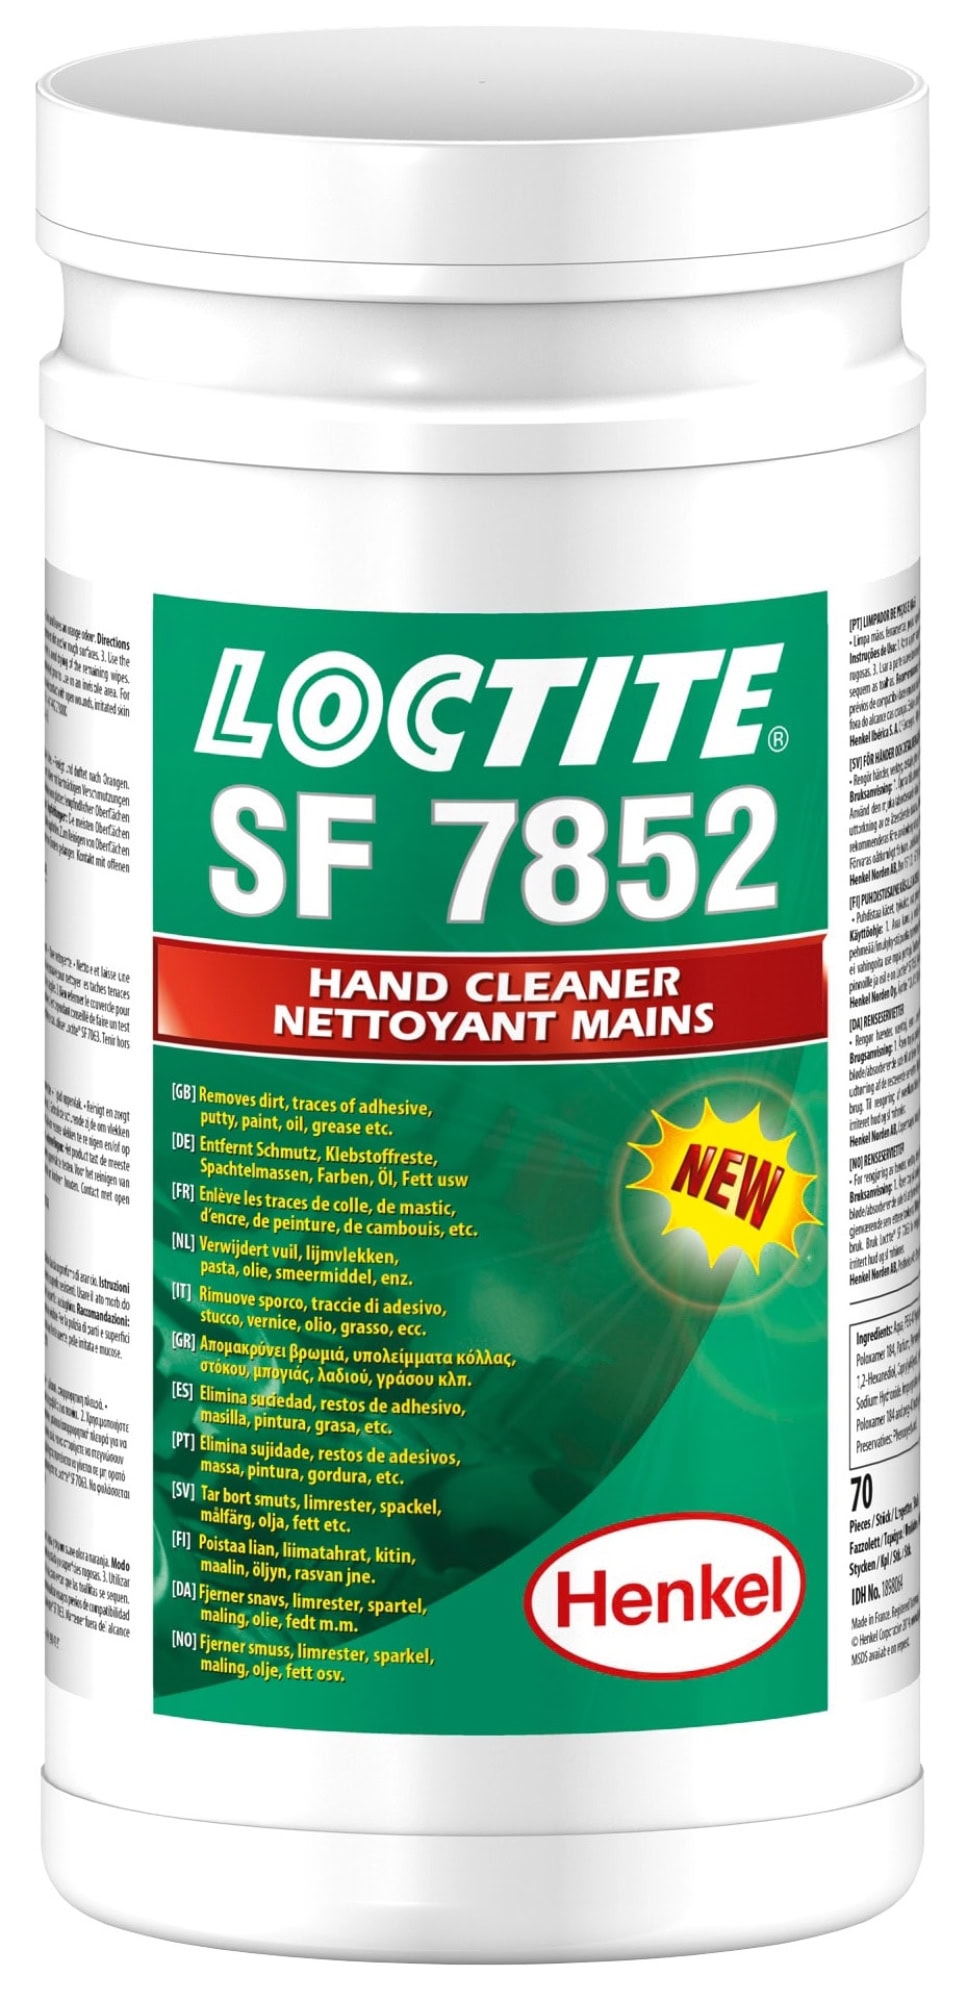 Henkel™ Loctite® Reinigungstuch SF 7852, 70 Tücher, Vorbefeuchtetes Vlies, Professionelles Einweg Reinigungstuch